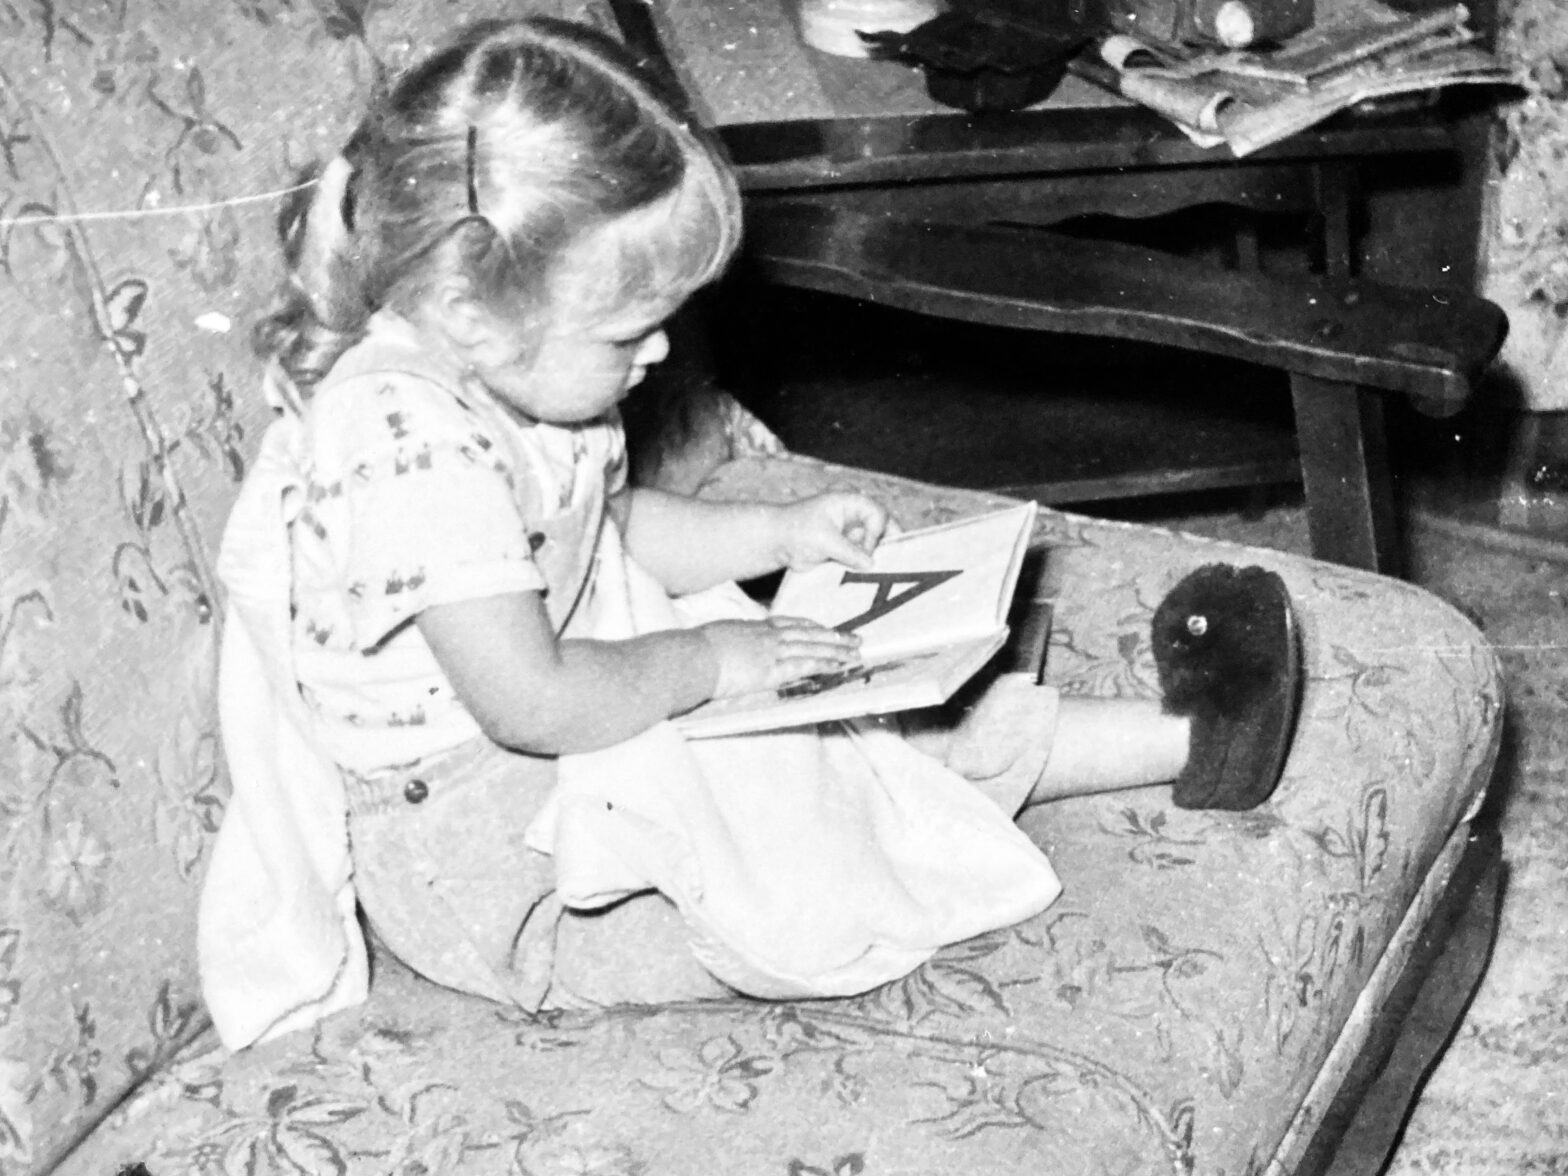 Little girl viewing an alphabet book